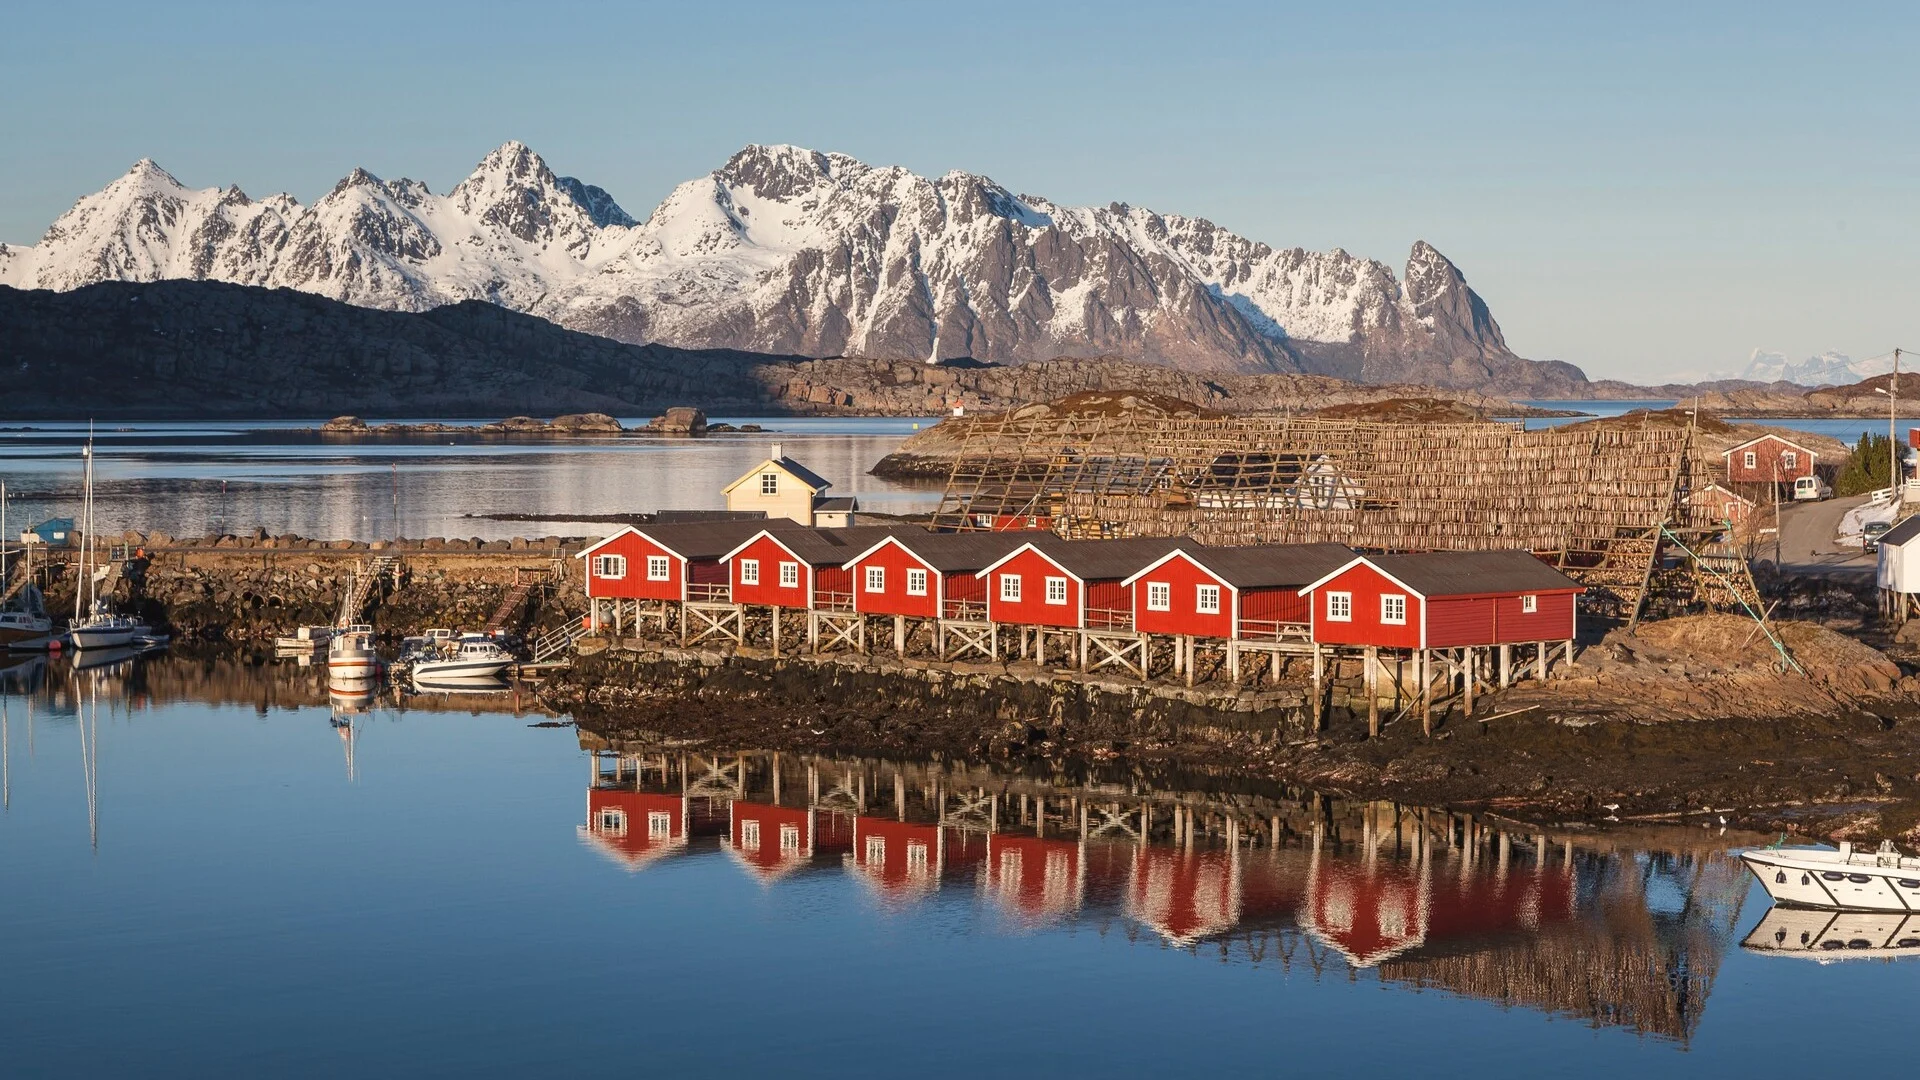 Groupe de rorbuer (maisons de pêche) rouges sur pilotis à Svinøya, dans les îles Lofoten, en Norvège.